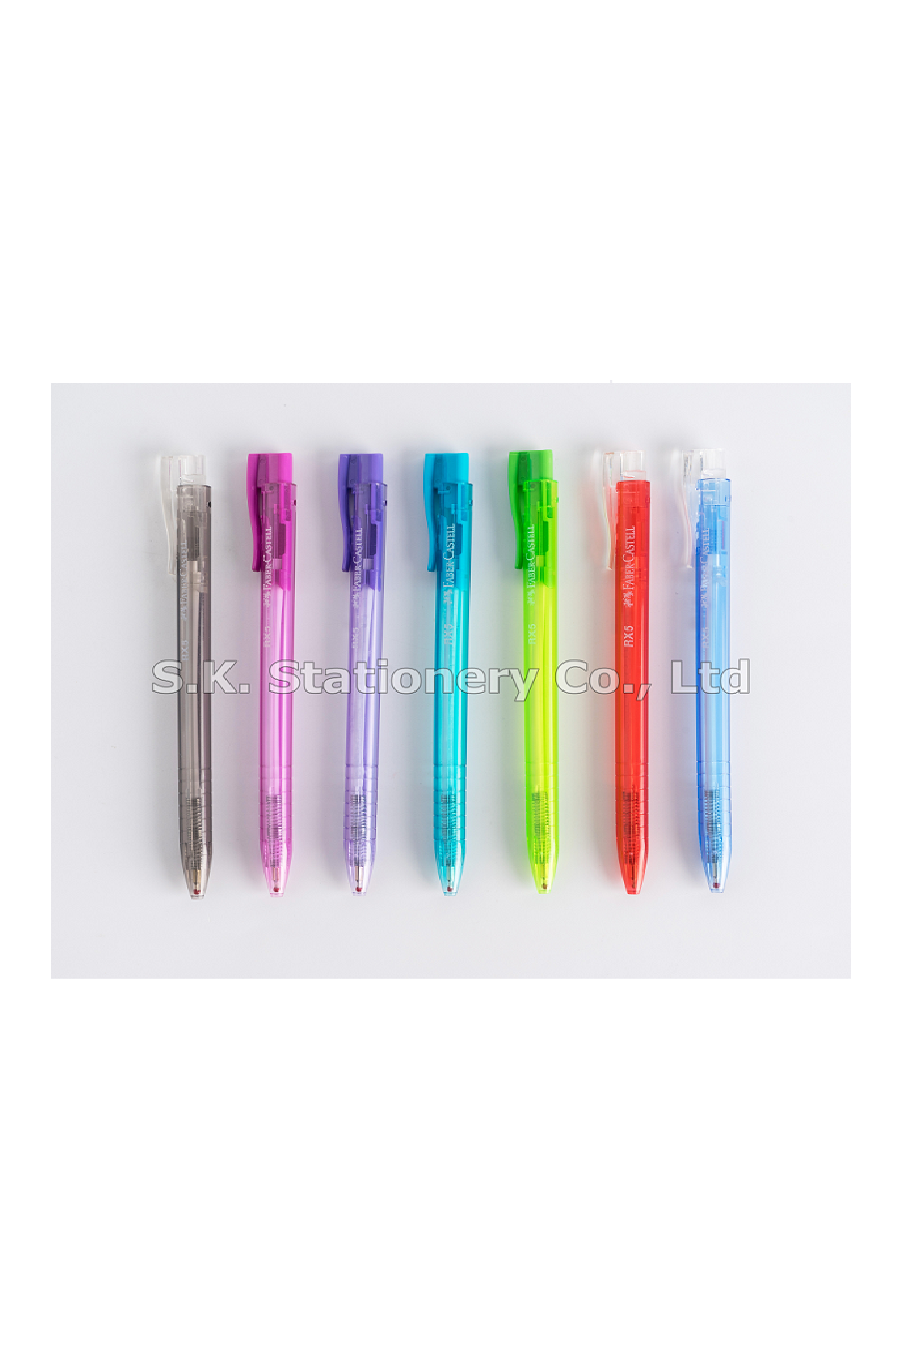 ปากกาเฟเบอร์ RX5 ( 10 ด้าม )